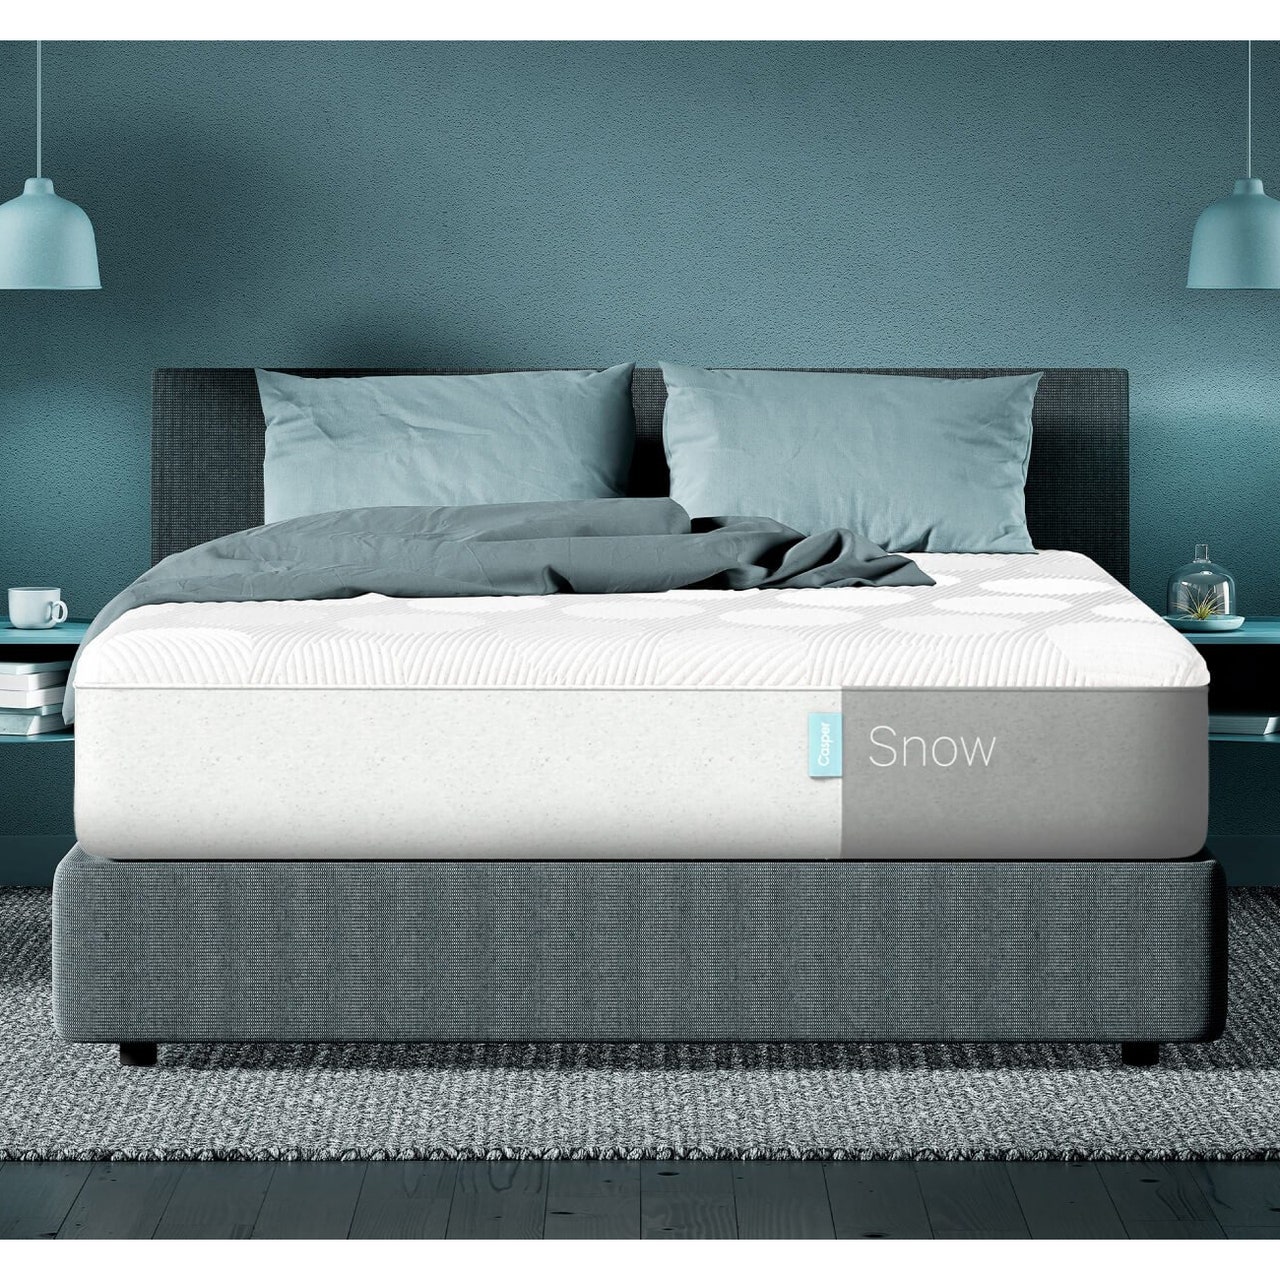 Casper Snow Matratze (Queen), weiße Matratze auf grauem Bettgestell mit blauen Laken im Schlafzimmer mit blauen Wänden